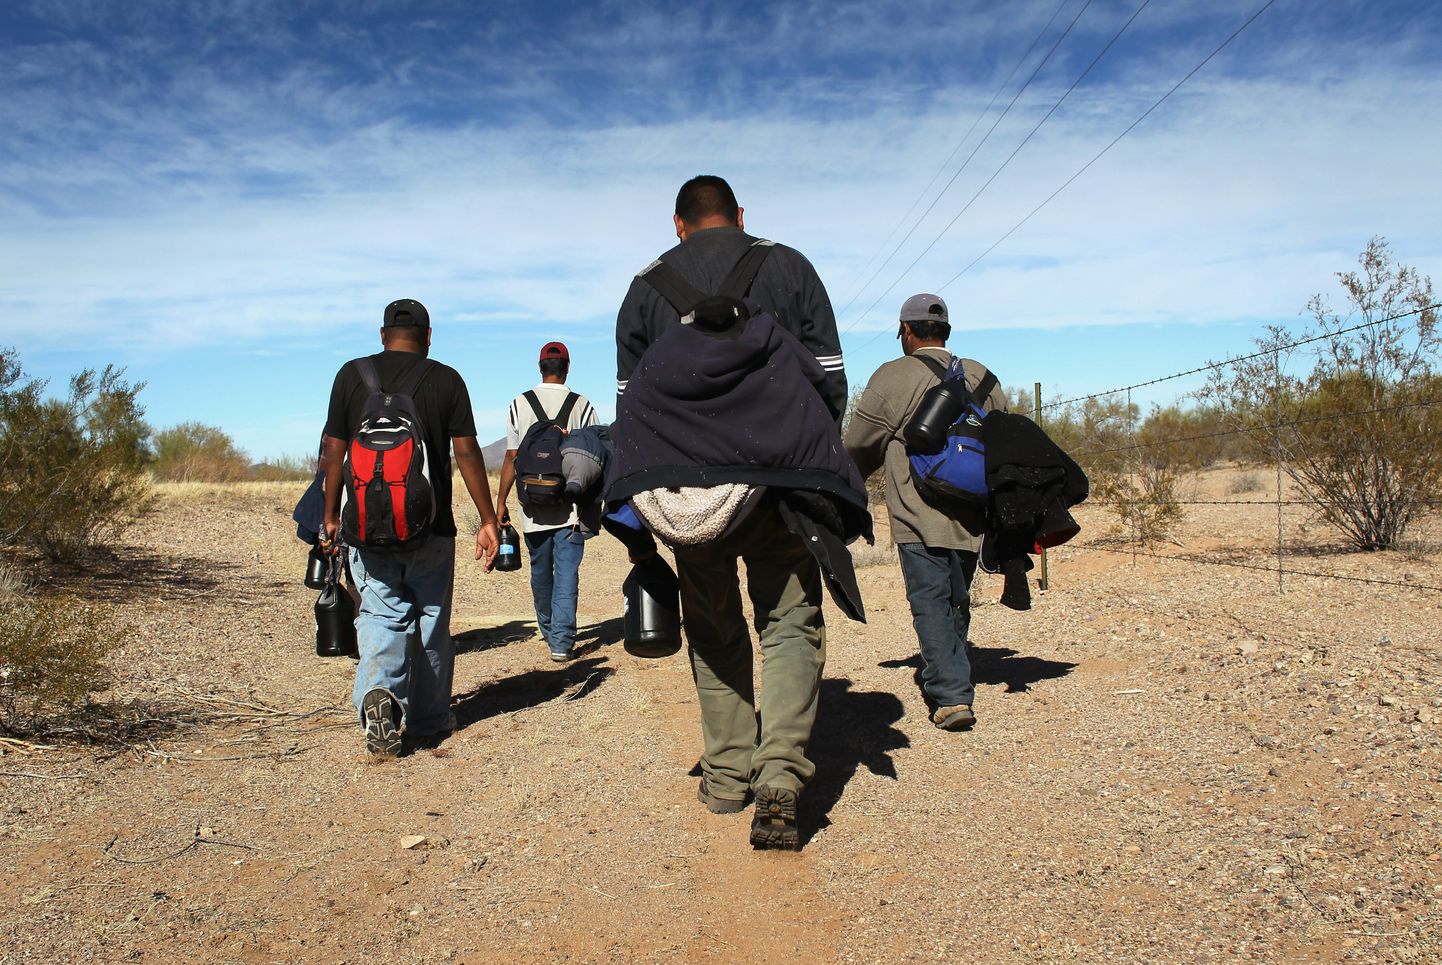 Põhja-Ameerika põlisrahvaste üksus, mis otsib Sonora kõrbes inimsmugeldajaid ja migrante.